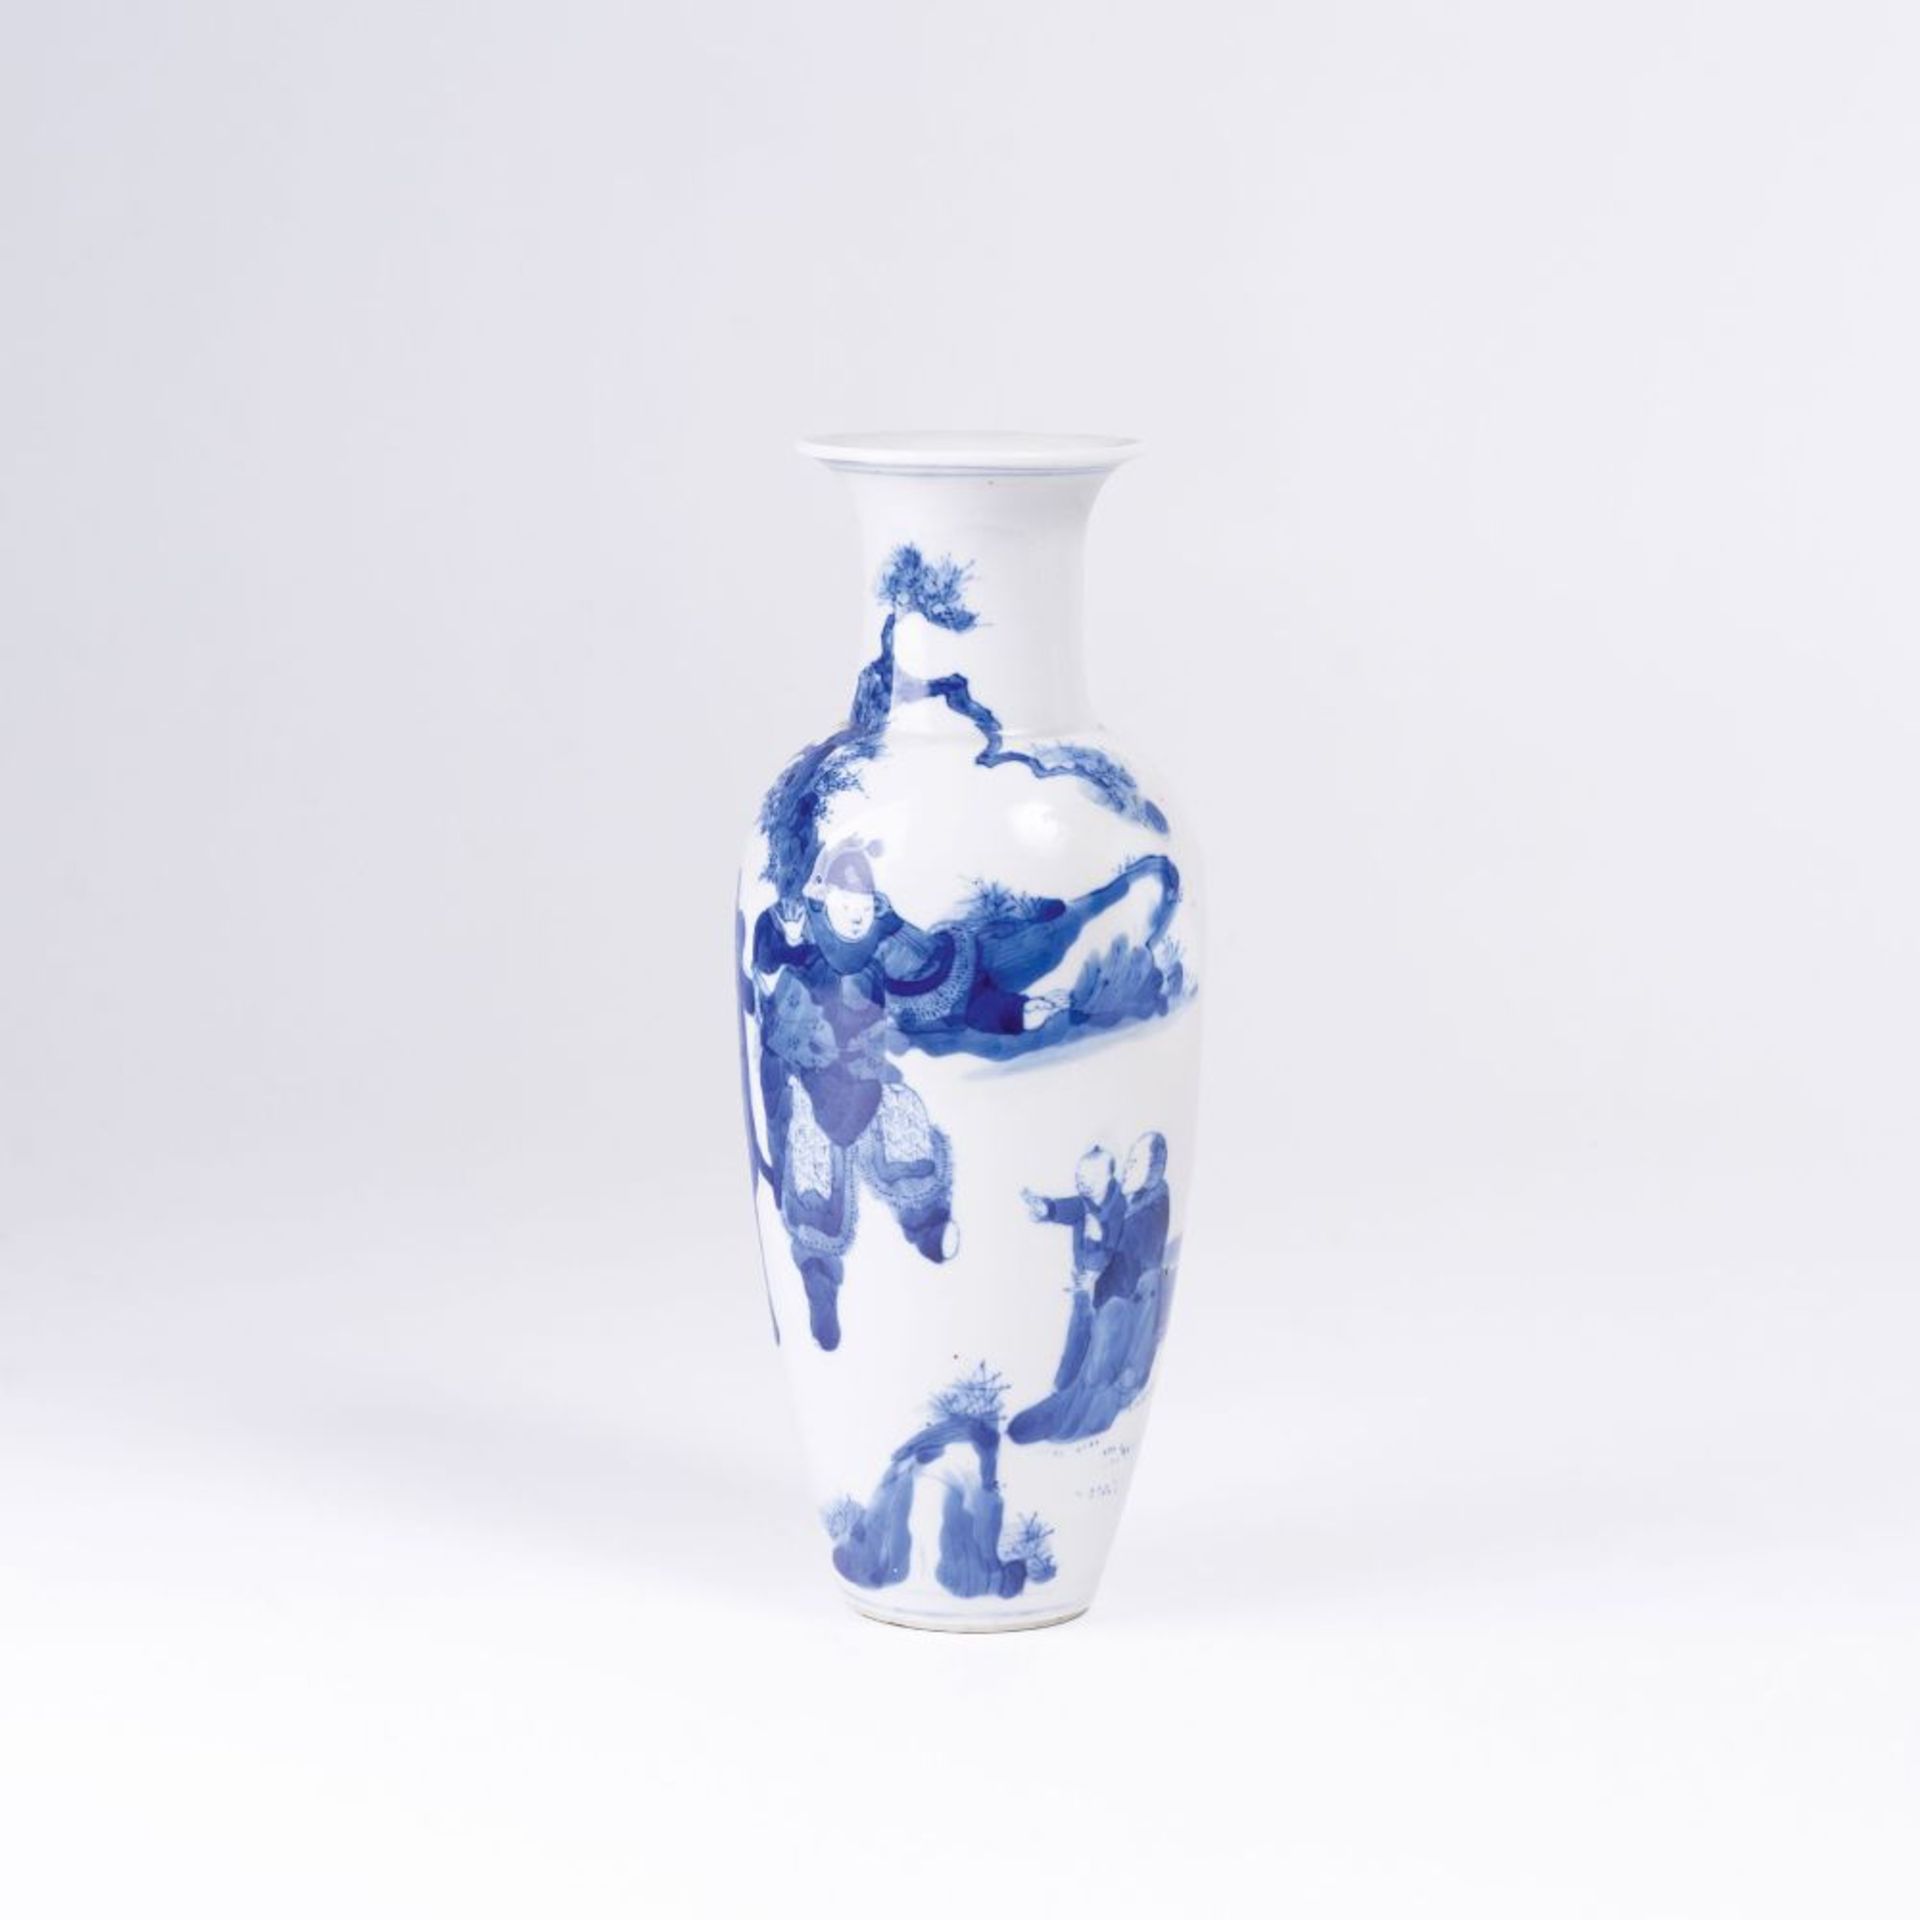 Vase mit Blau-weiß-Dekor.